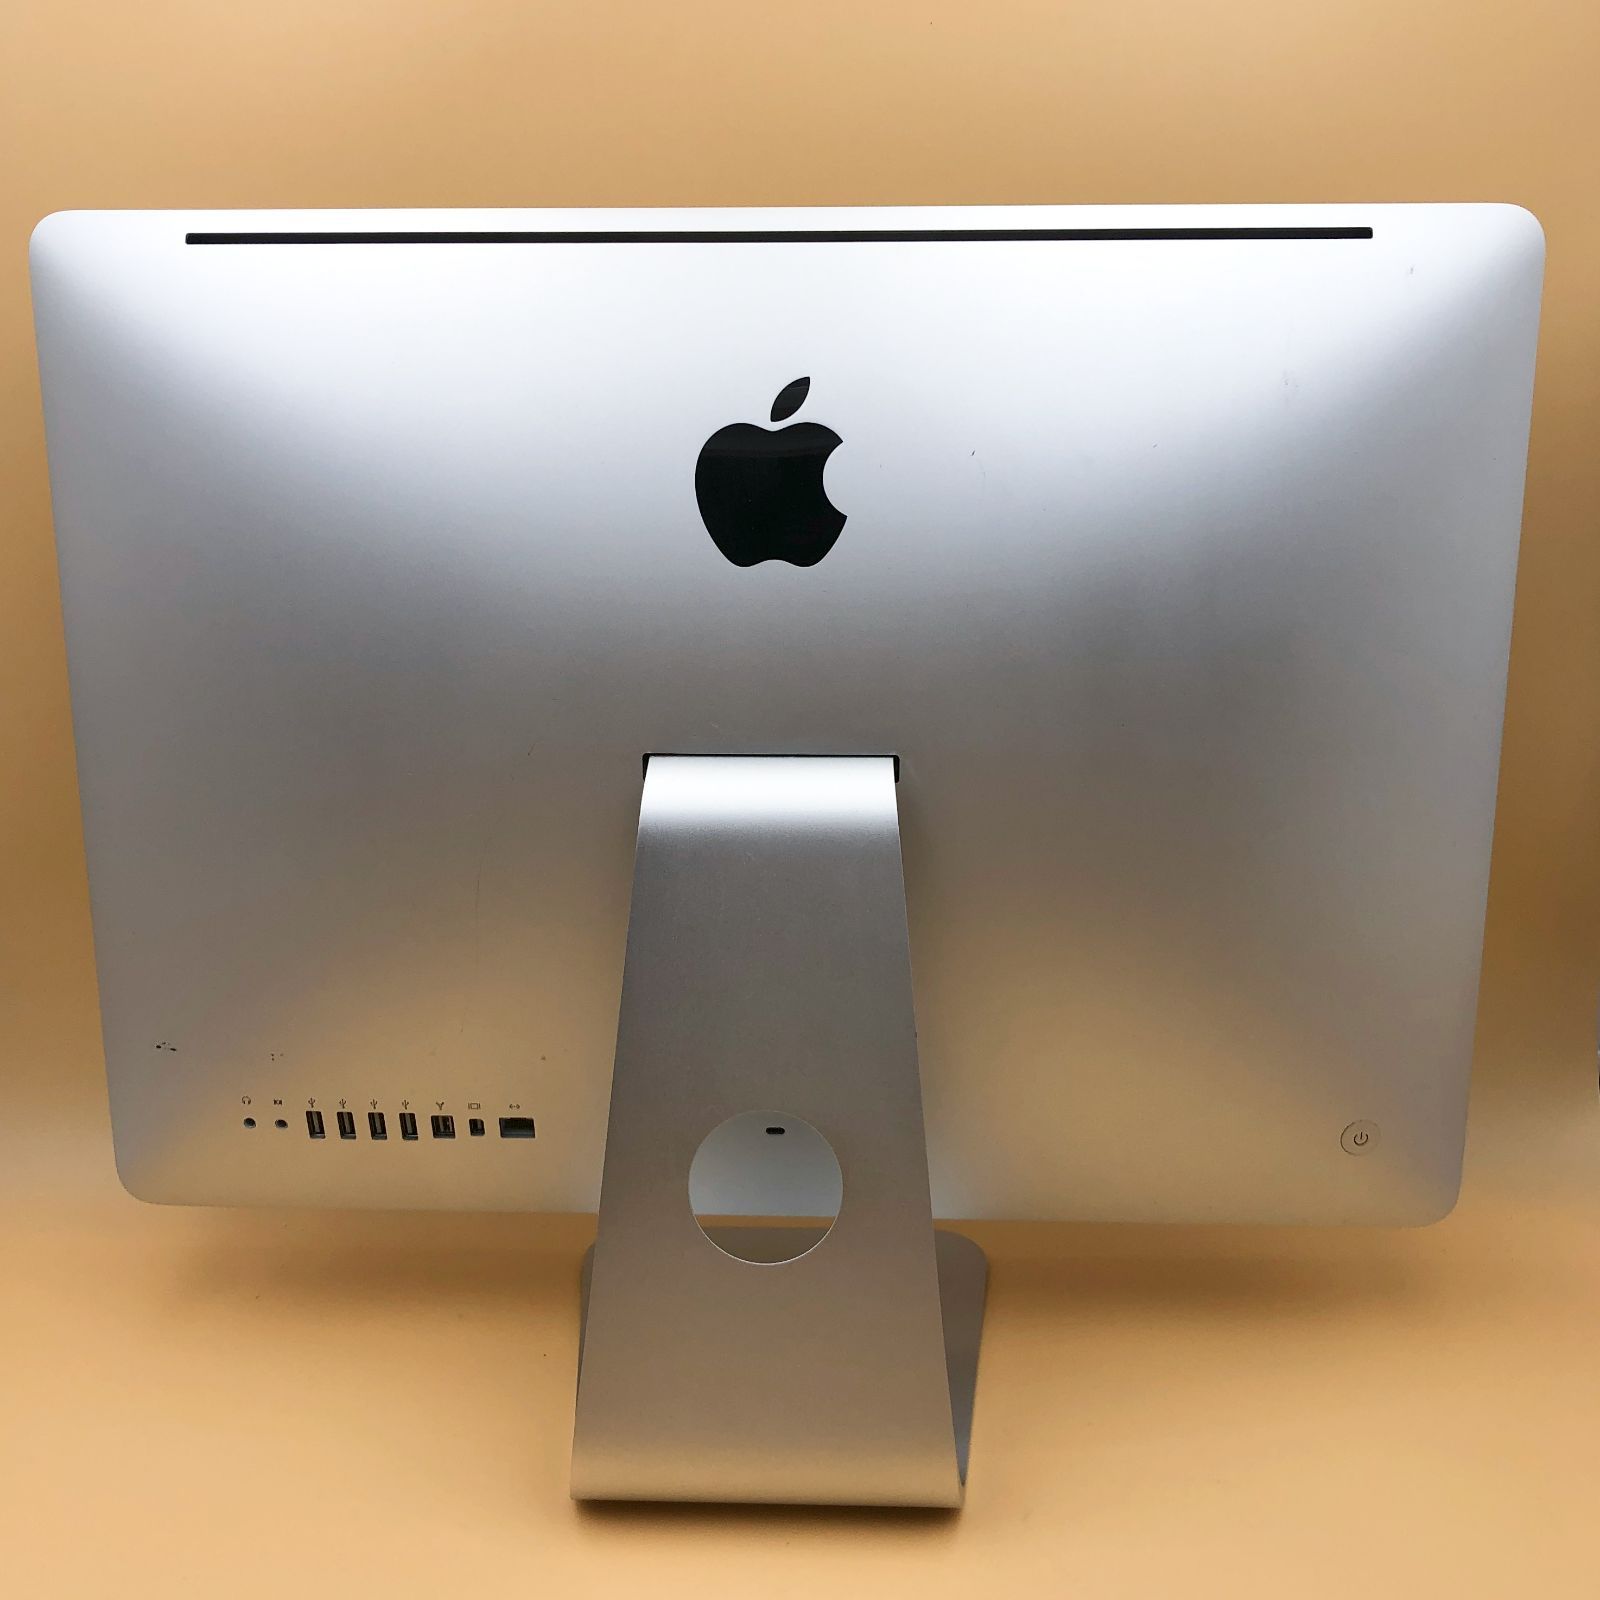 ☆10,000円PCシリーズ☆ Apple iMac (21.5-inch, Mid 2010) Mac OS